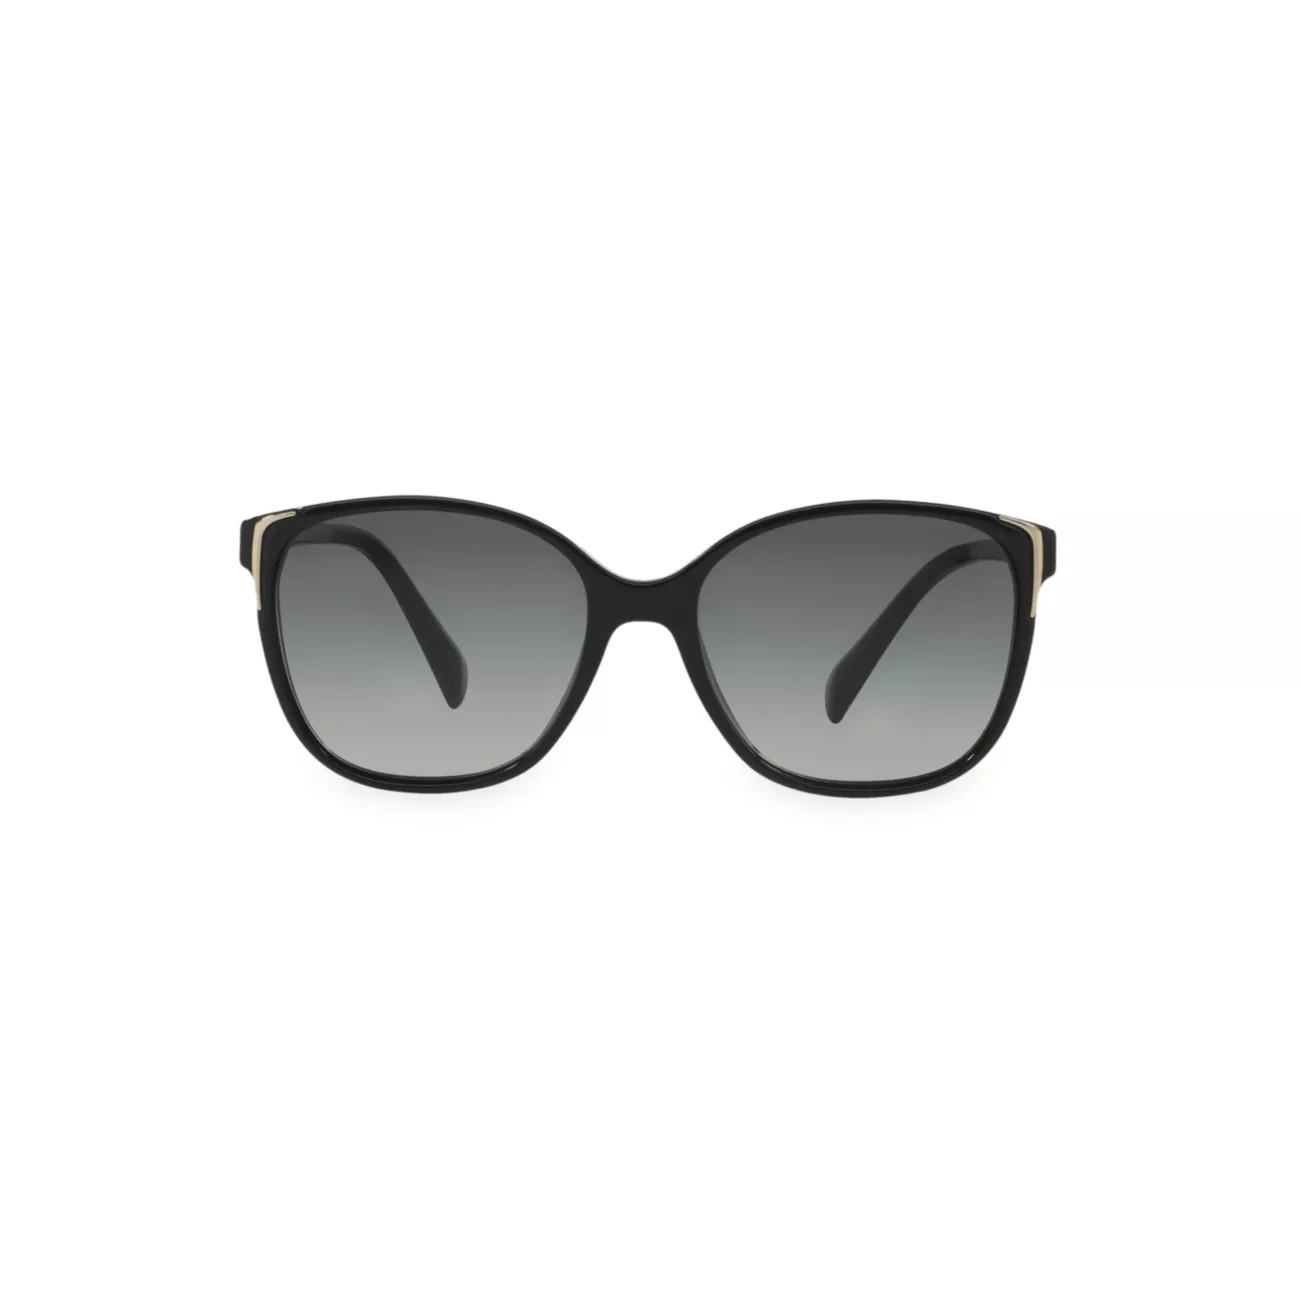 Квадратные солнцезащитные очки из пластика с металлической отделкой Prada